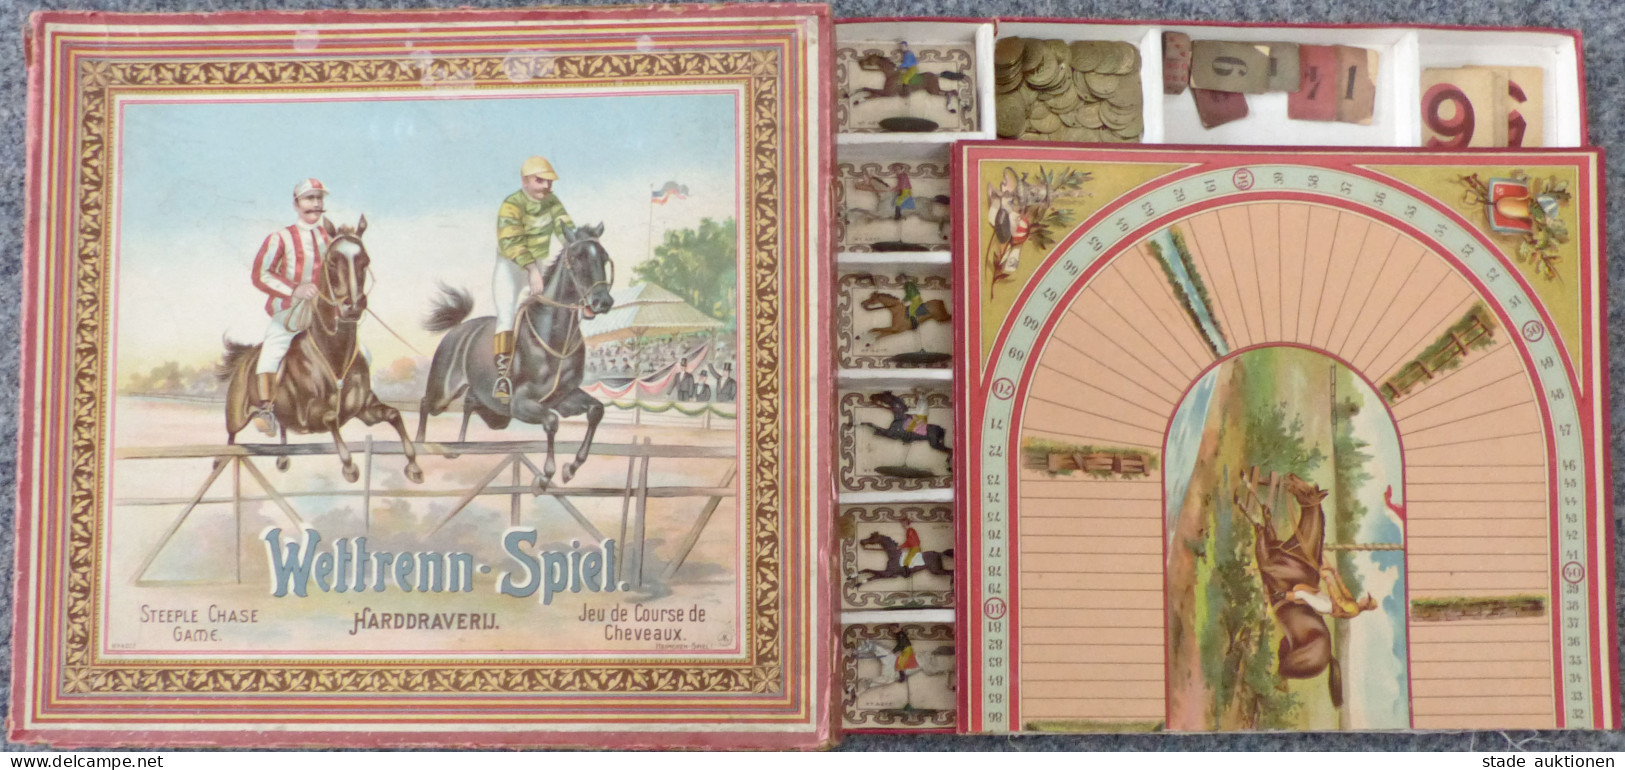 Spielzeug Wettrenn-Spiel Von Heimchen-Spiel 1902, Mit Original-Schachtel Und Anleitung, Alle Pferde Und Spielgeld Vorhan - Spielzeug & Spiele